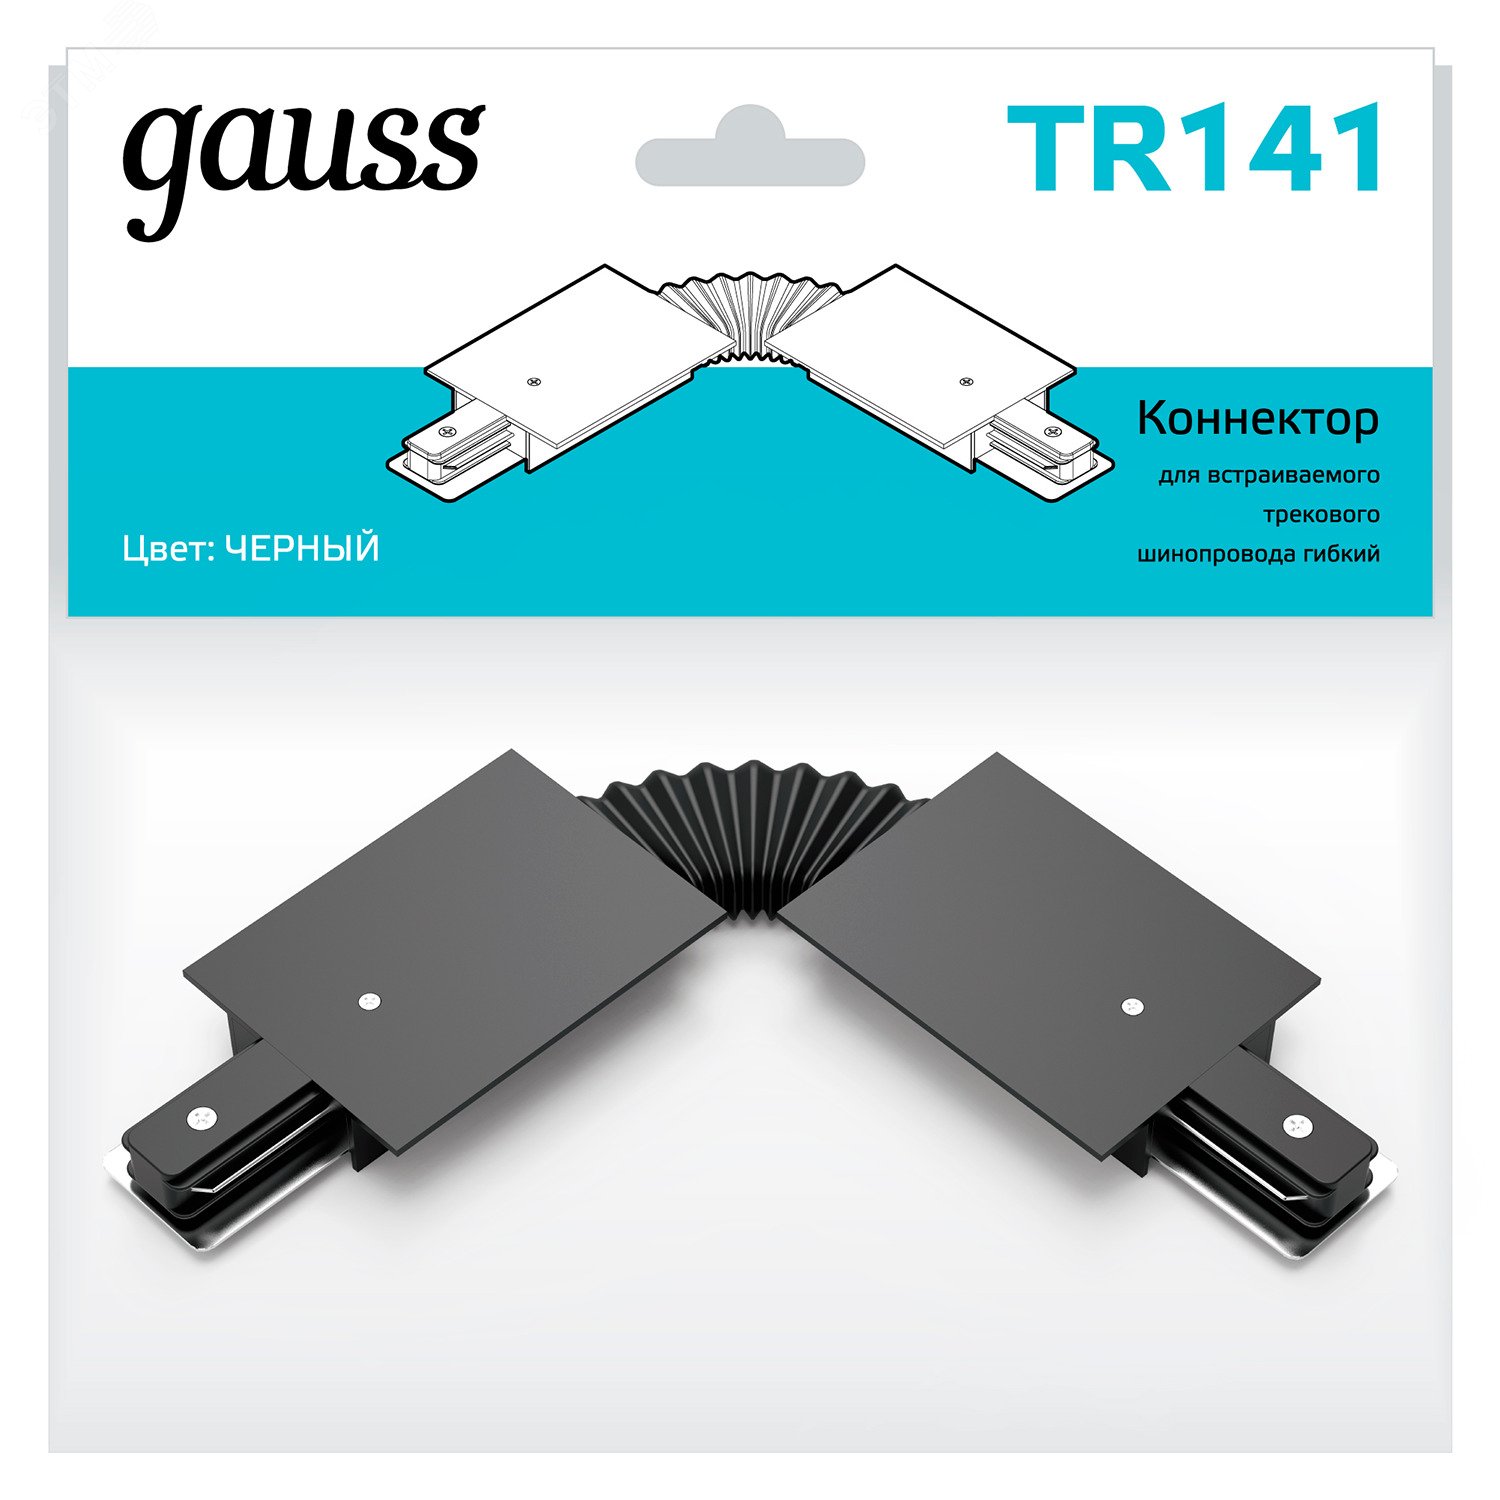 Коннектор для встраиваемых трековых шинопроводов гибкий (I) черный однофазный TR141 GAUSS - превью 5